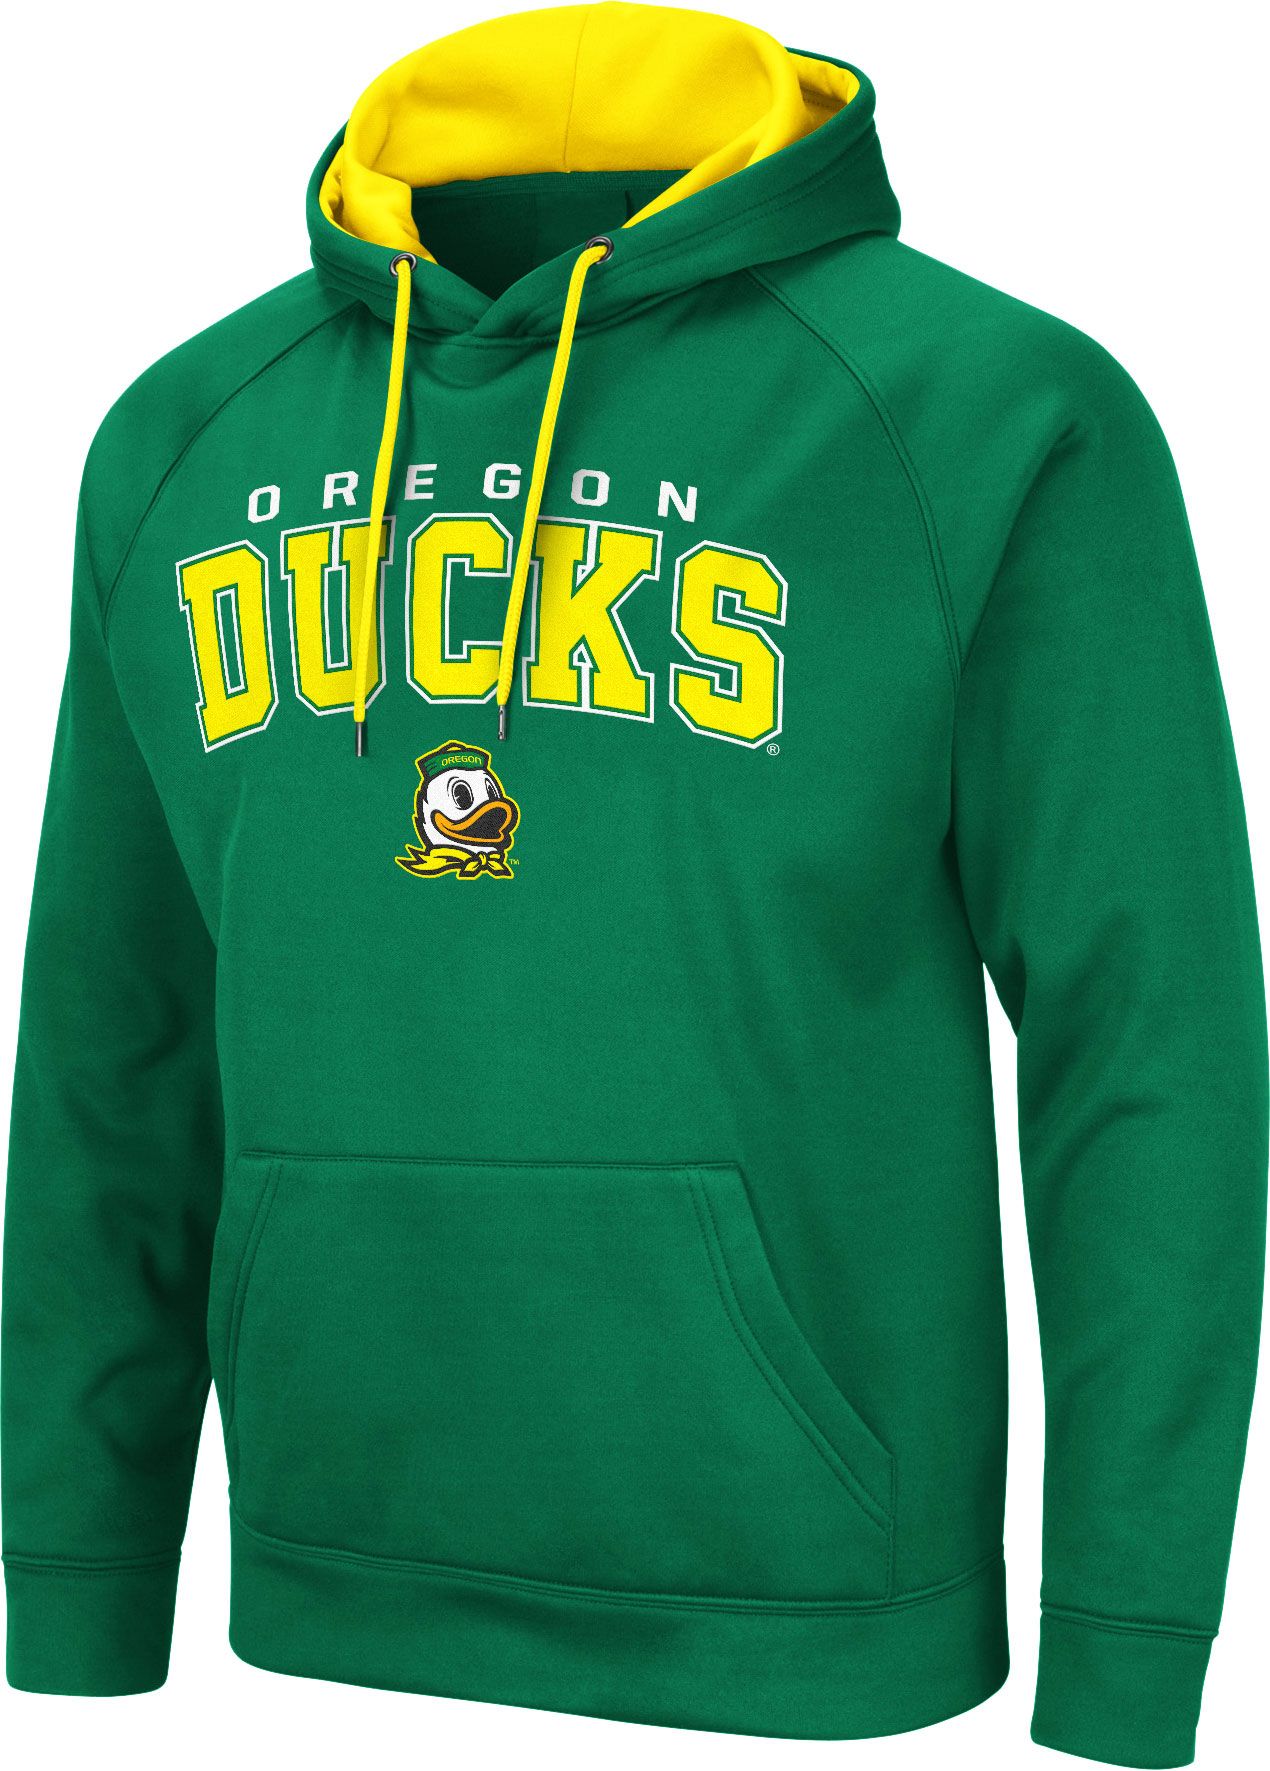 oregon ducks men's sweatshirt